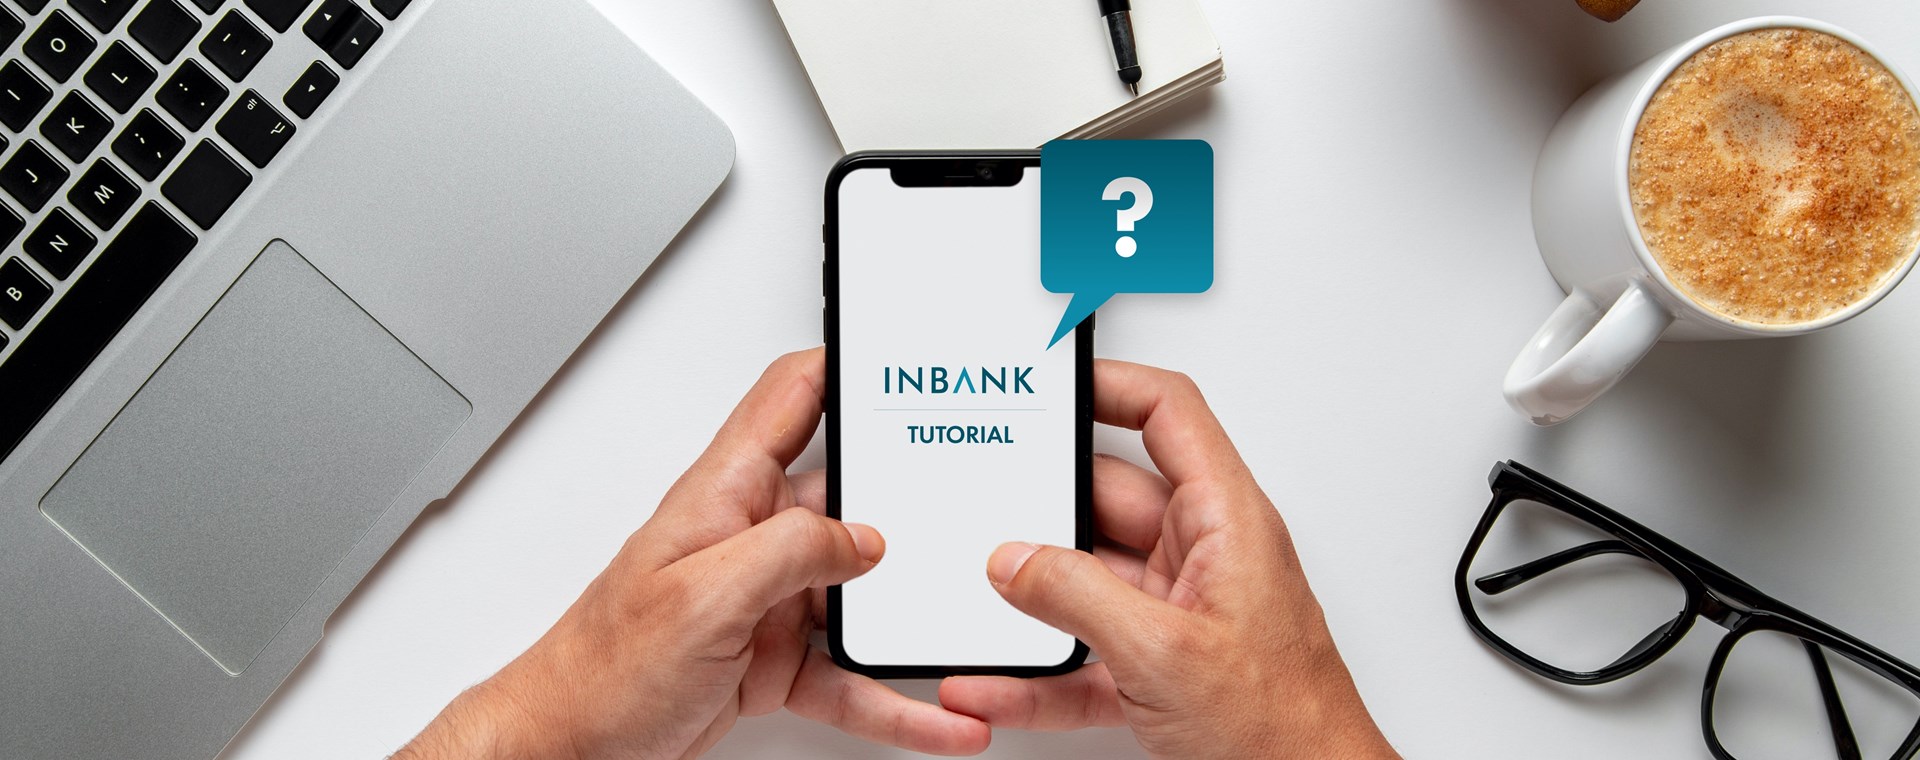 Tutte le informazioni che cerchi sull' Inbank 